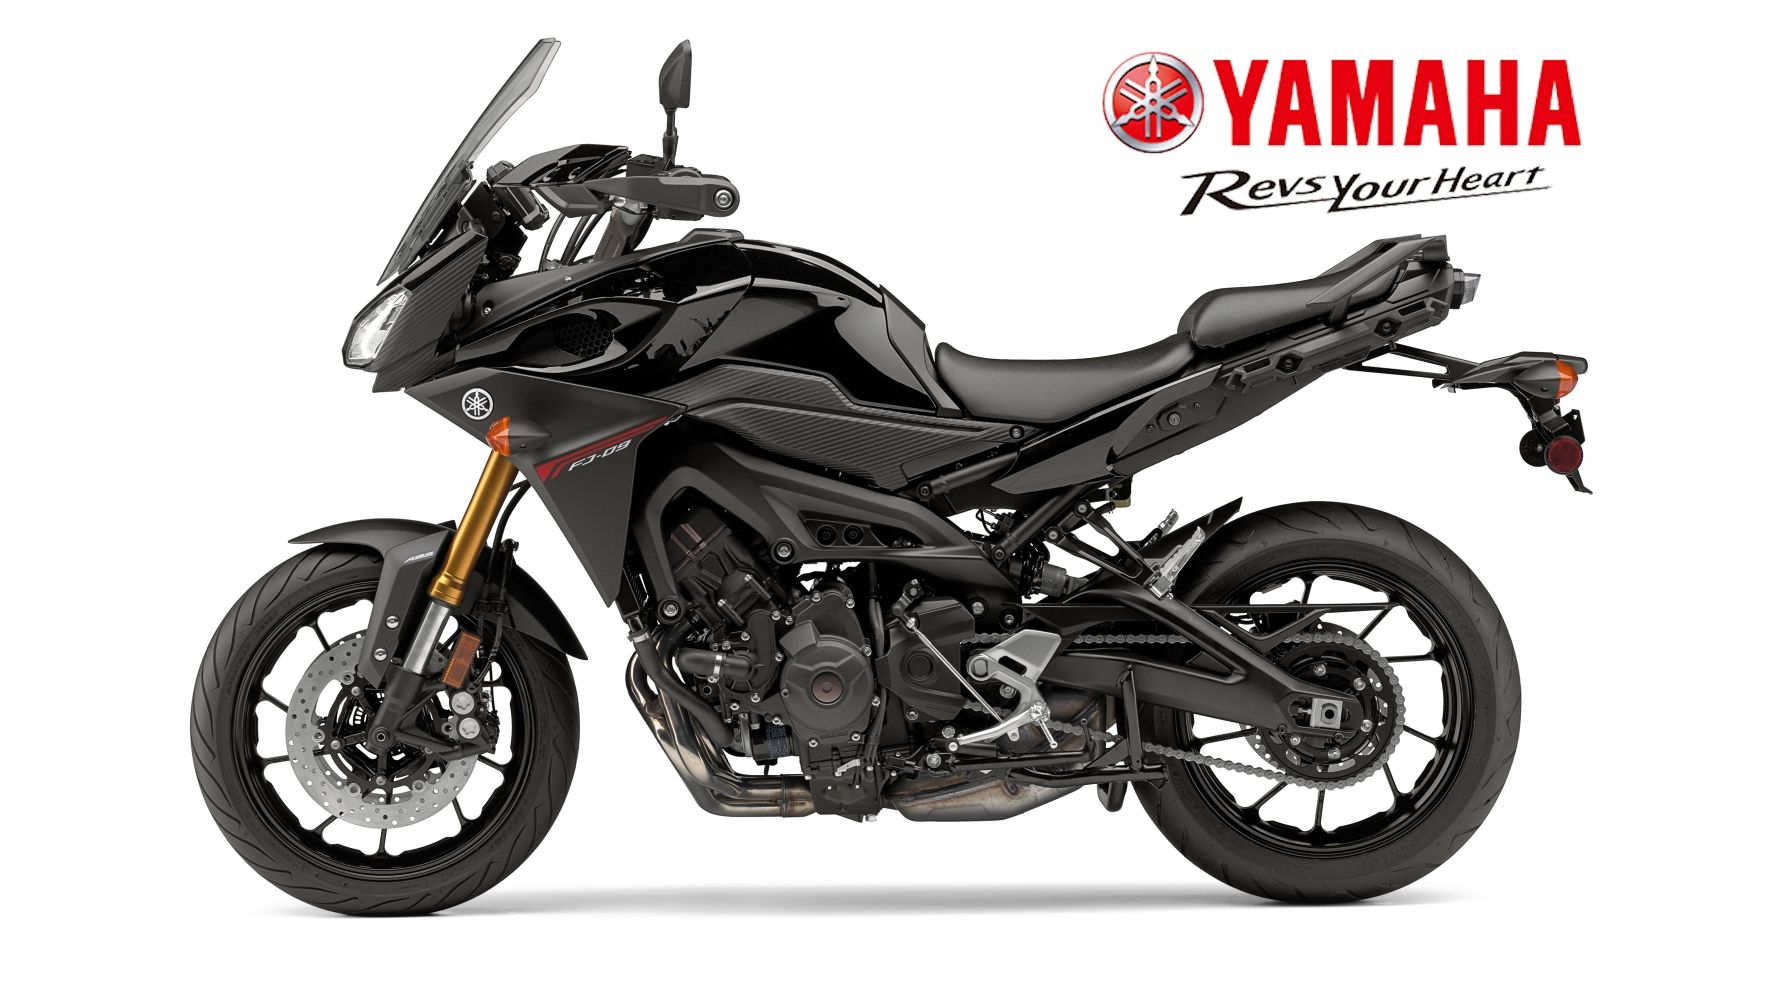 2015 - 2017 Yamaha FJ-09